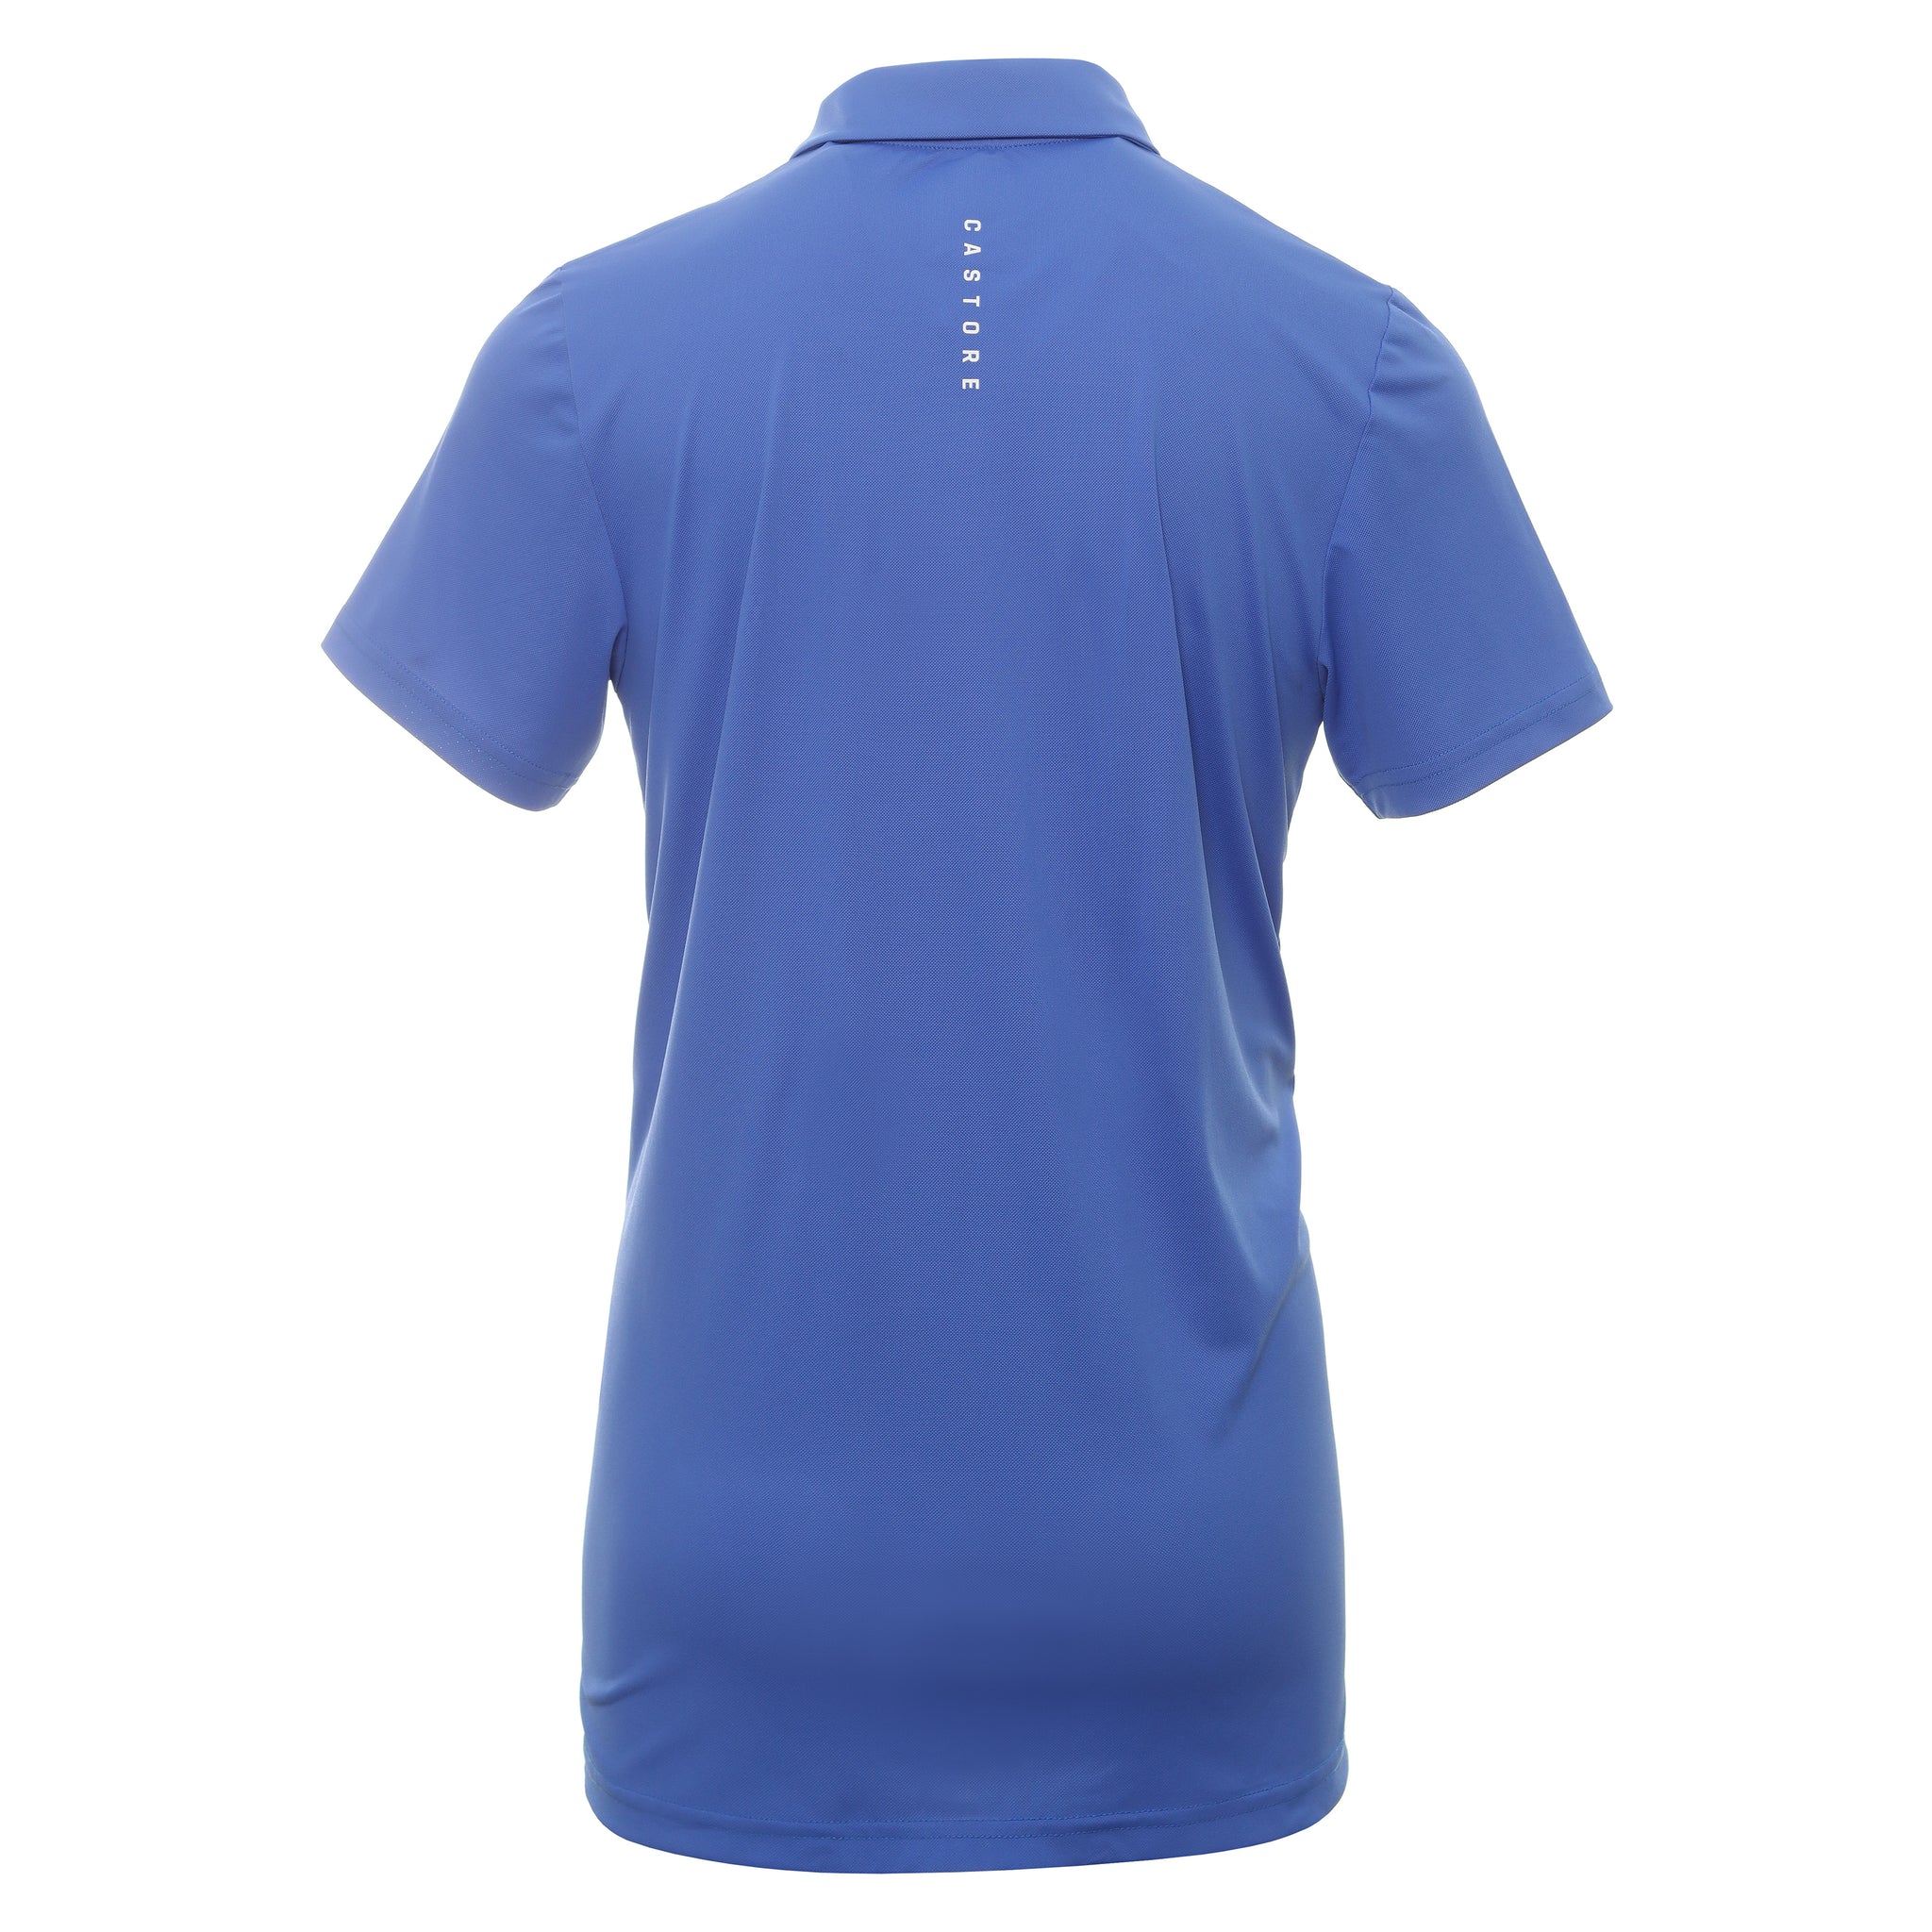 Castore Essential Golf Polo Shirt